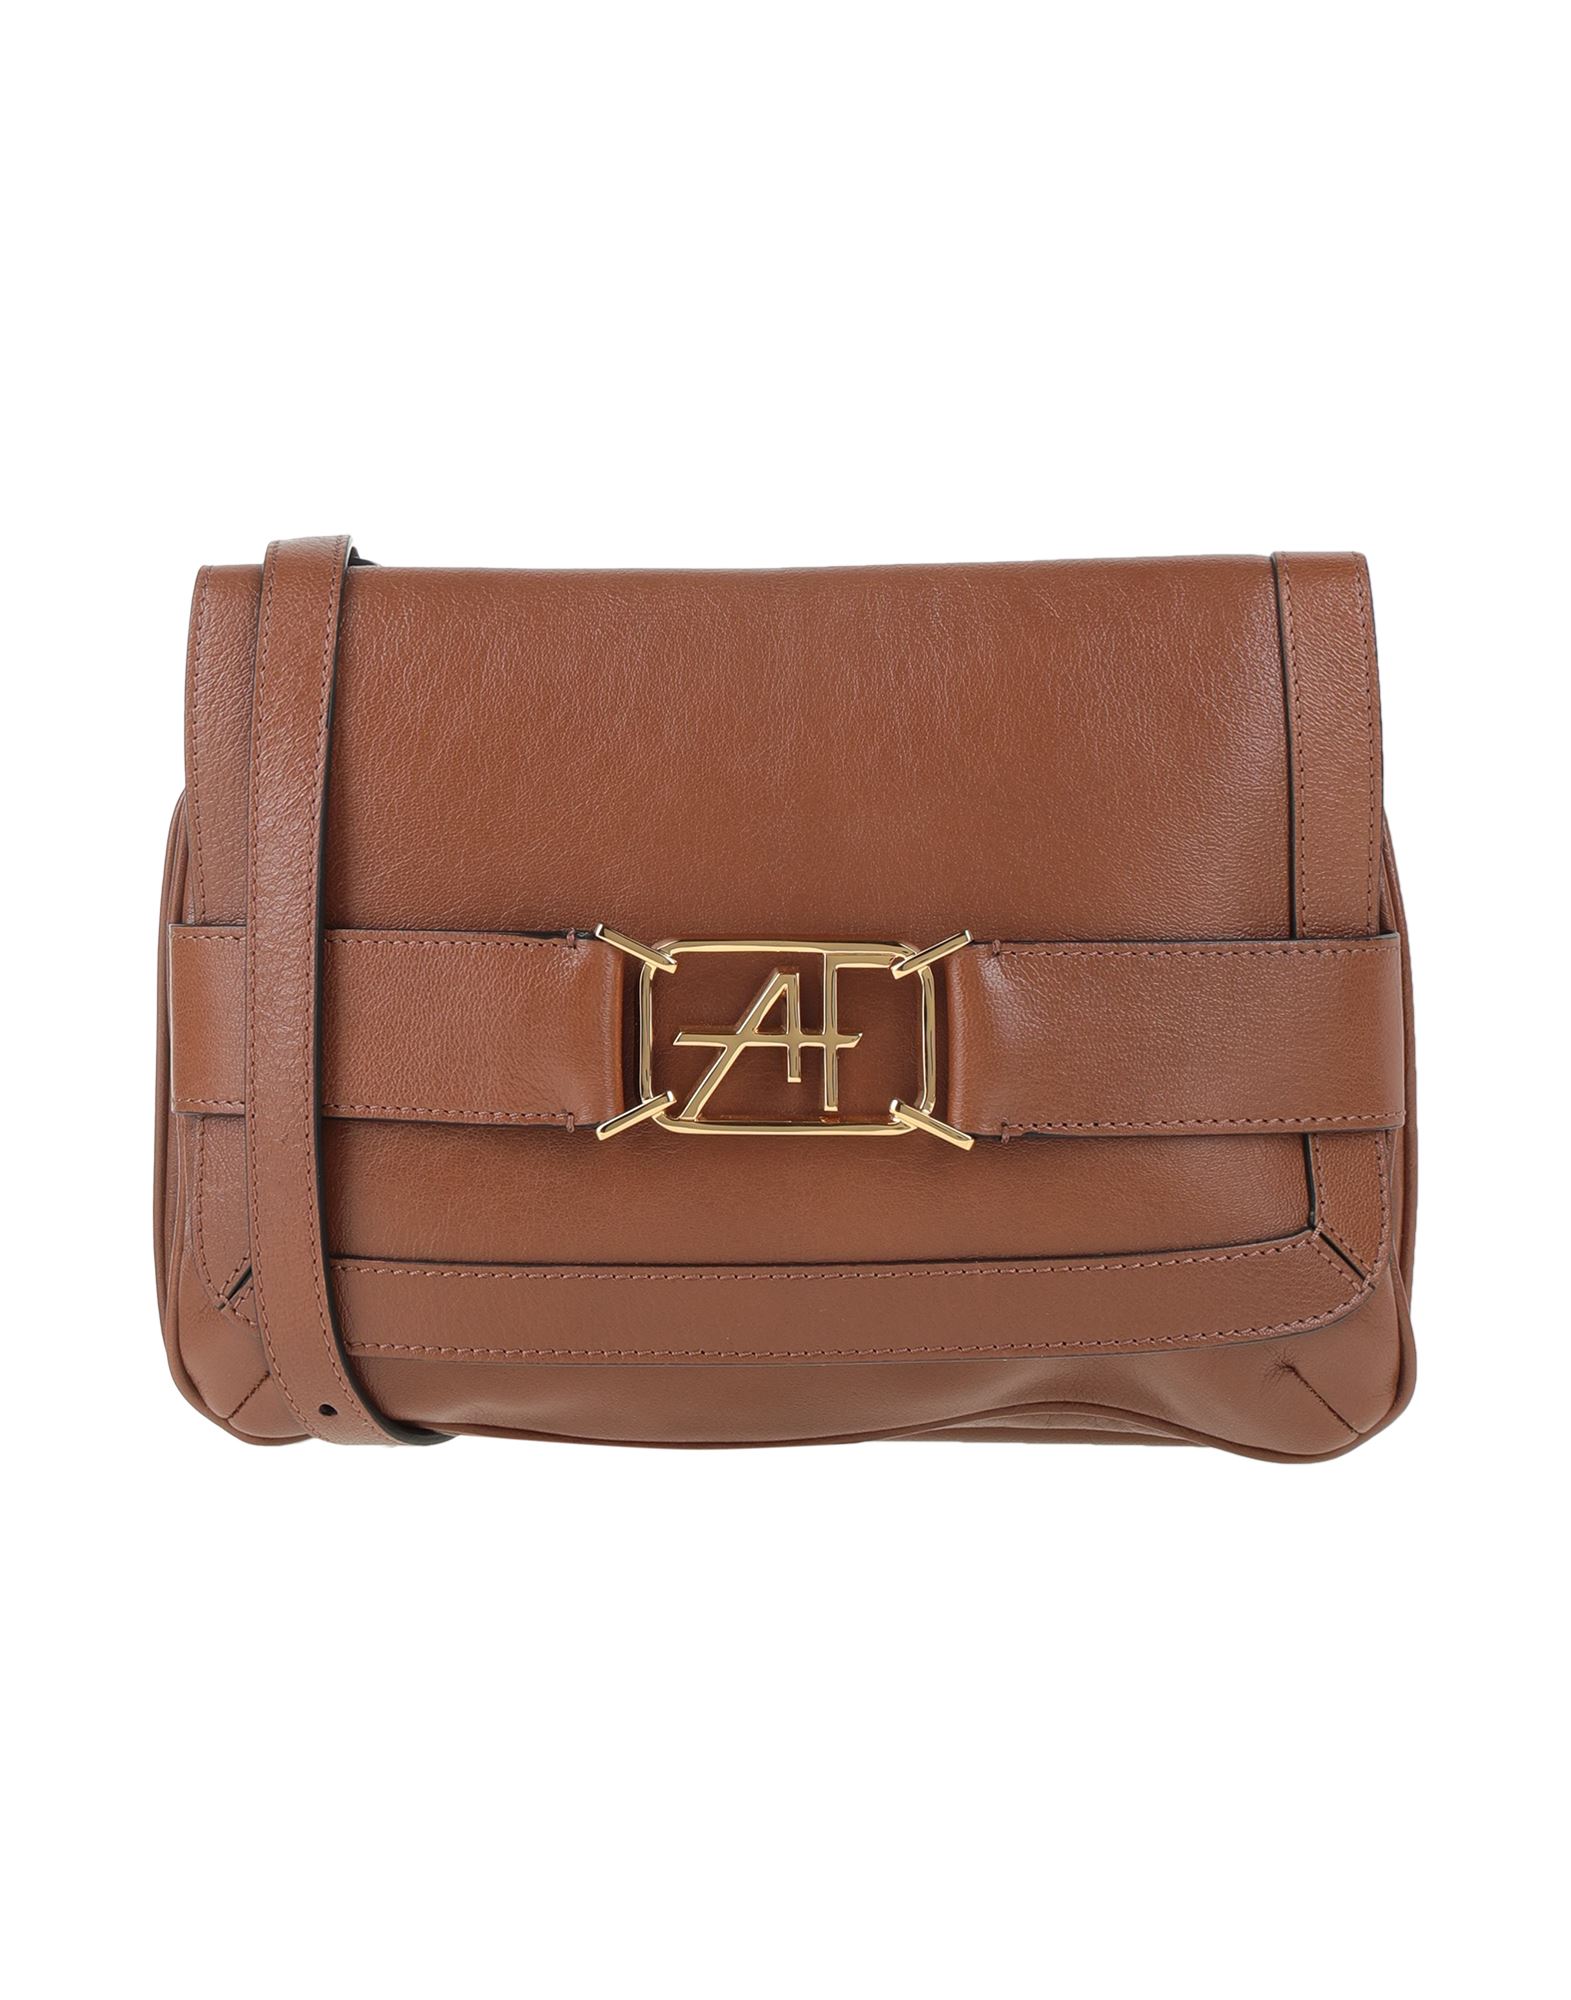 Alberta Ferretti Handbags In Brown